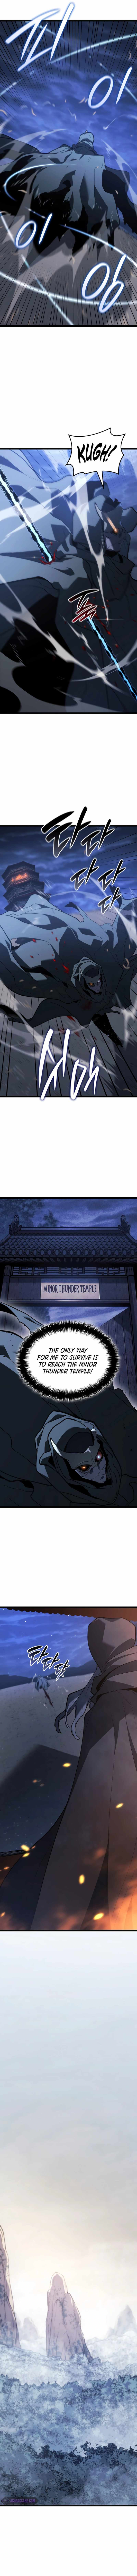 read Reaper of the Drifting Moon Chapter 84 Manga Online Free at Mangabuddy, MangaNato,Manhwatop | MangaSo.com